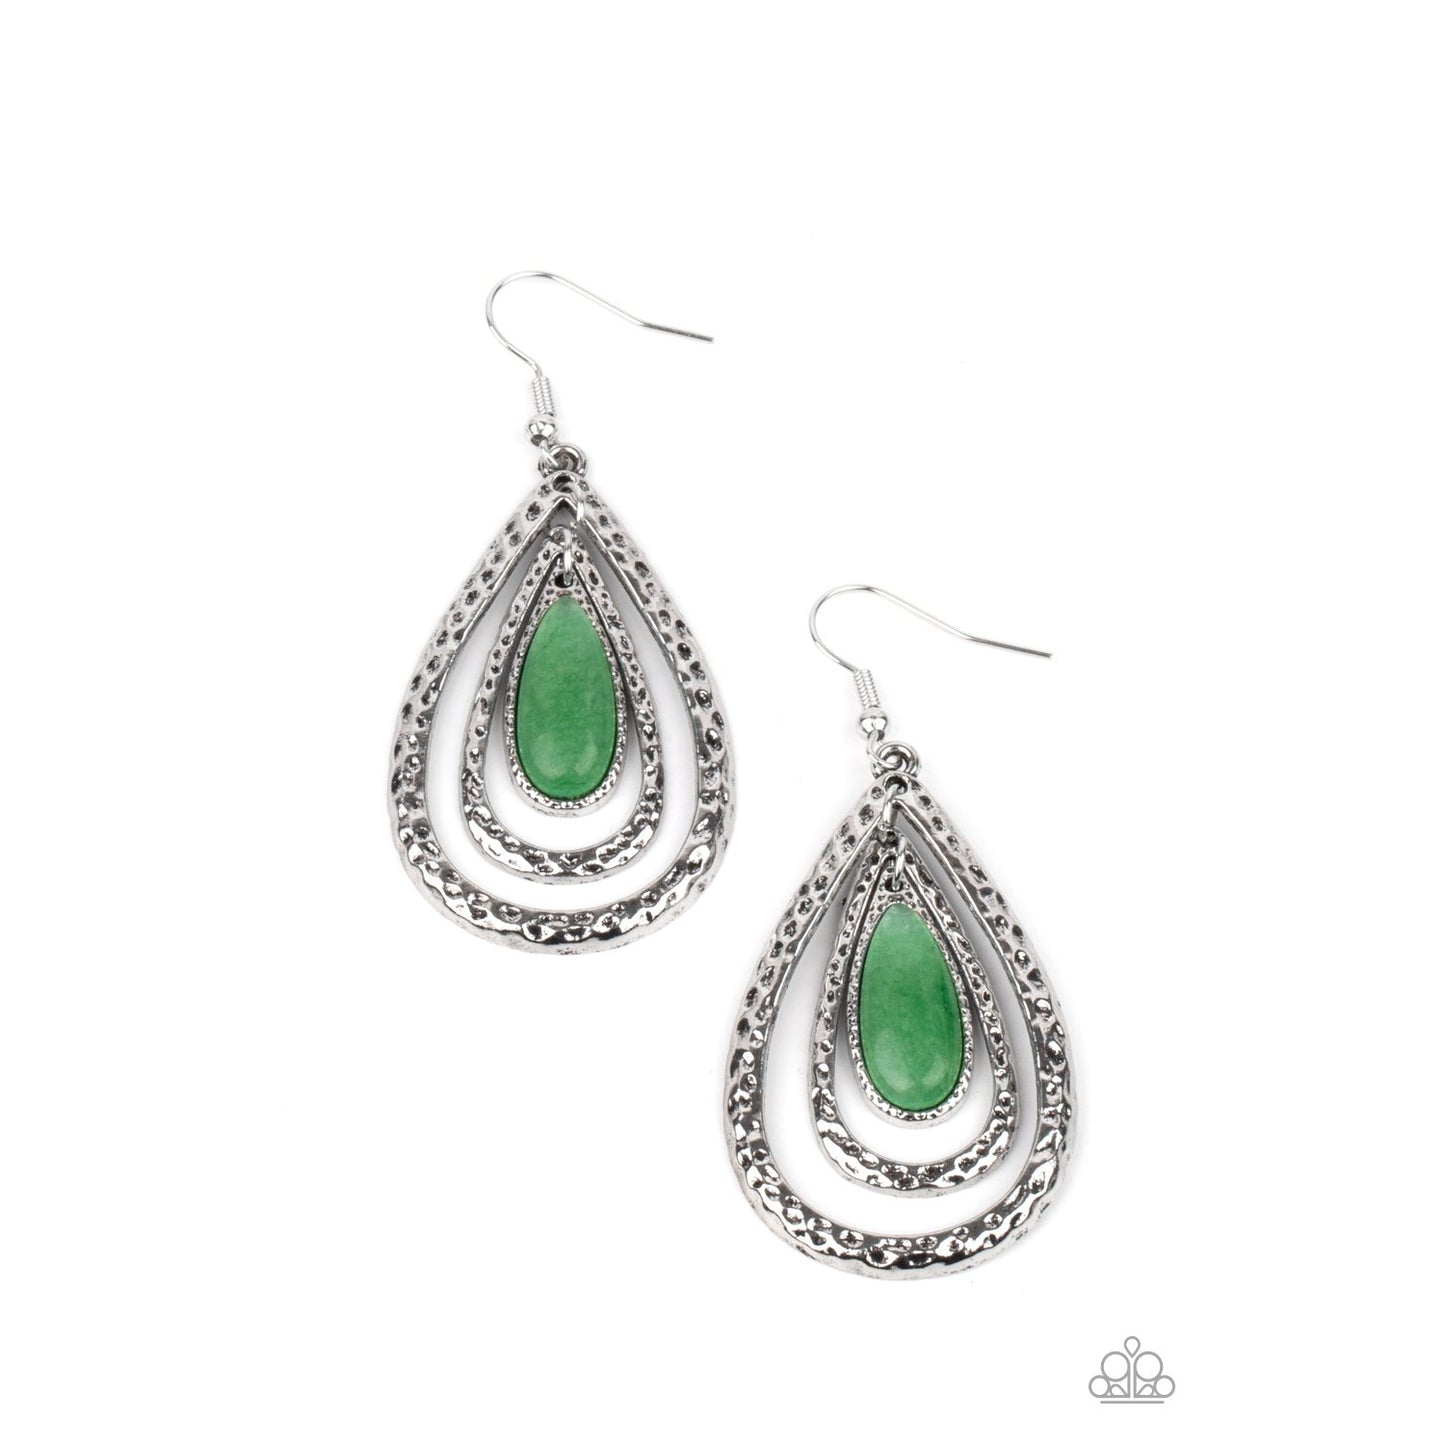 Teardrop Torrent - Green Teardrop Earrings - Paparazzi Accessories - GlaMarous Titi Jewels